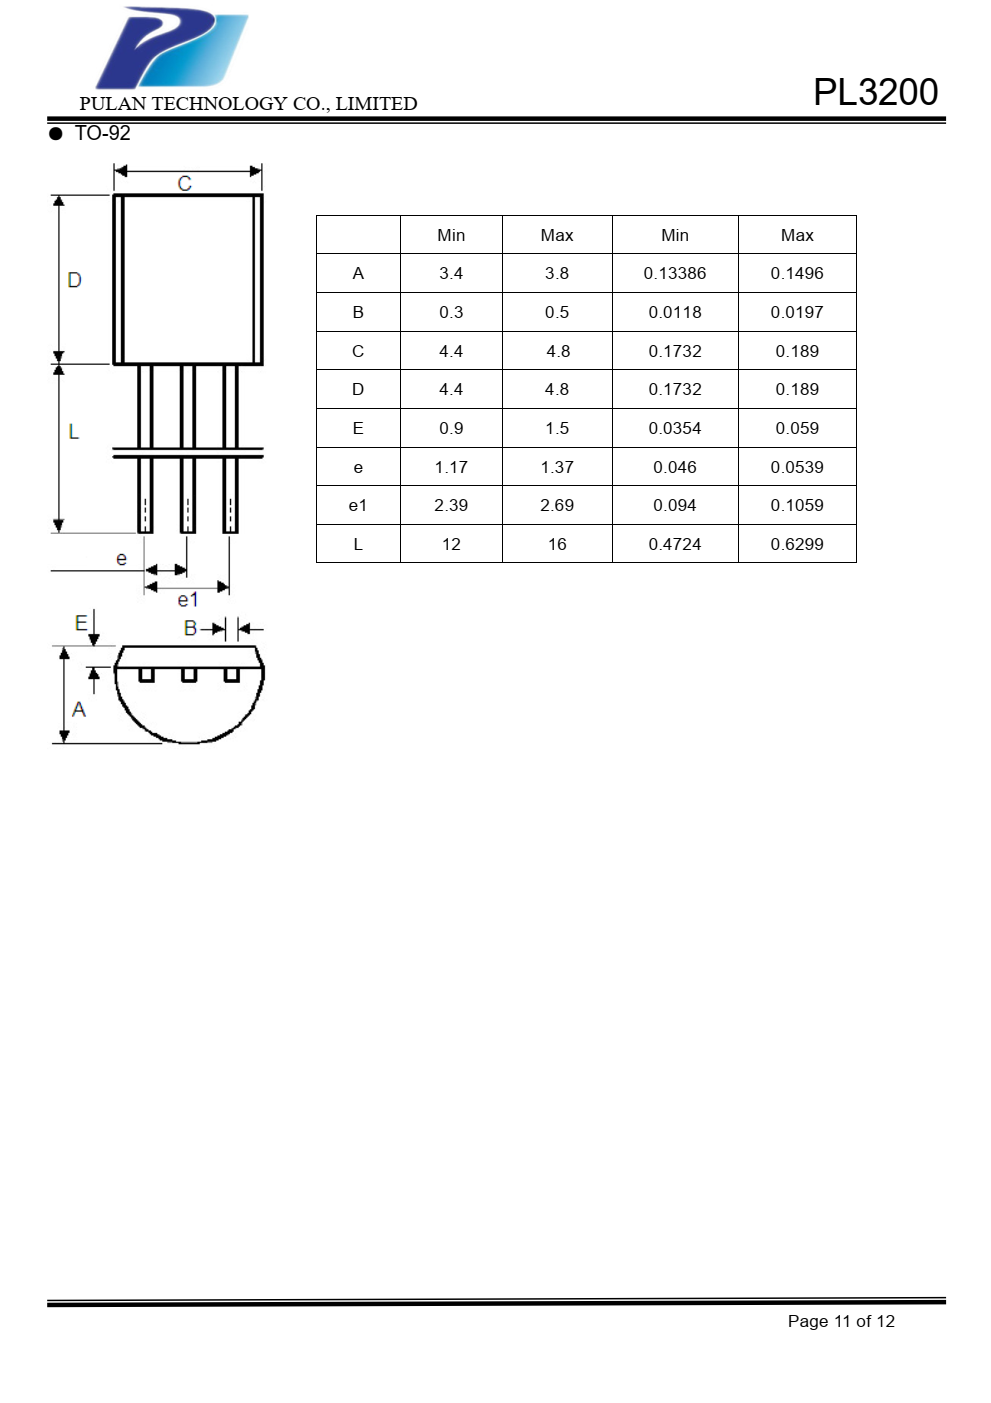 PL3200系列是一组正电压  输出，三针调节器，提供高电压  即使输入/输出电压  差别很小